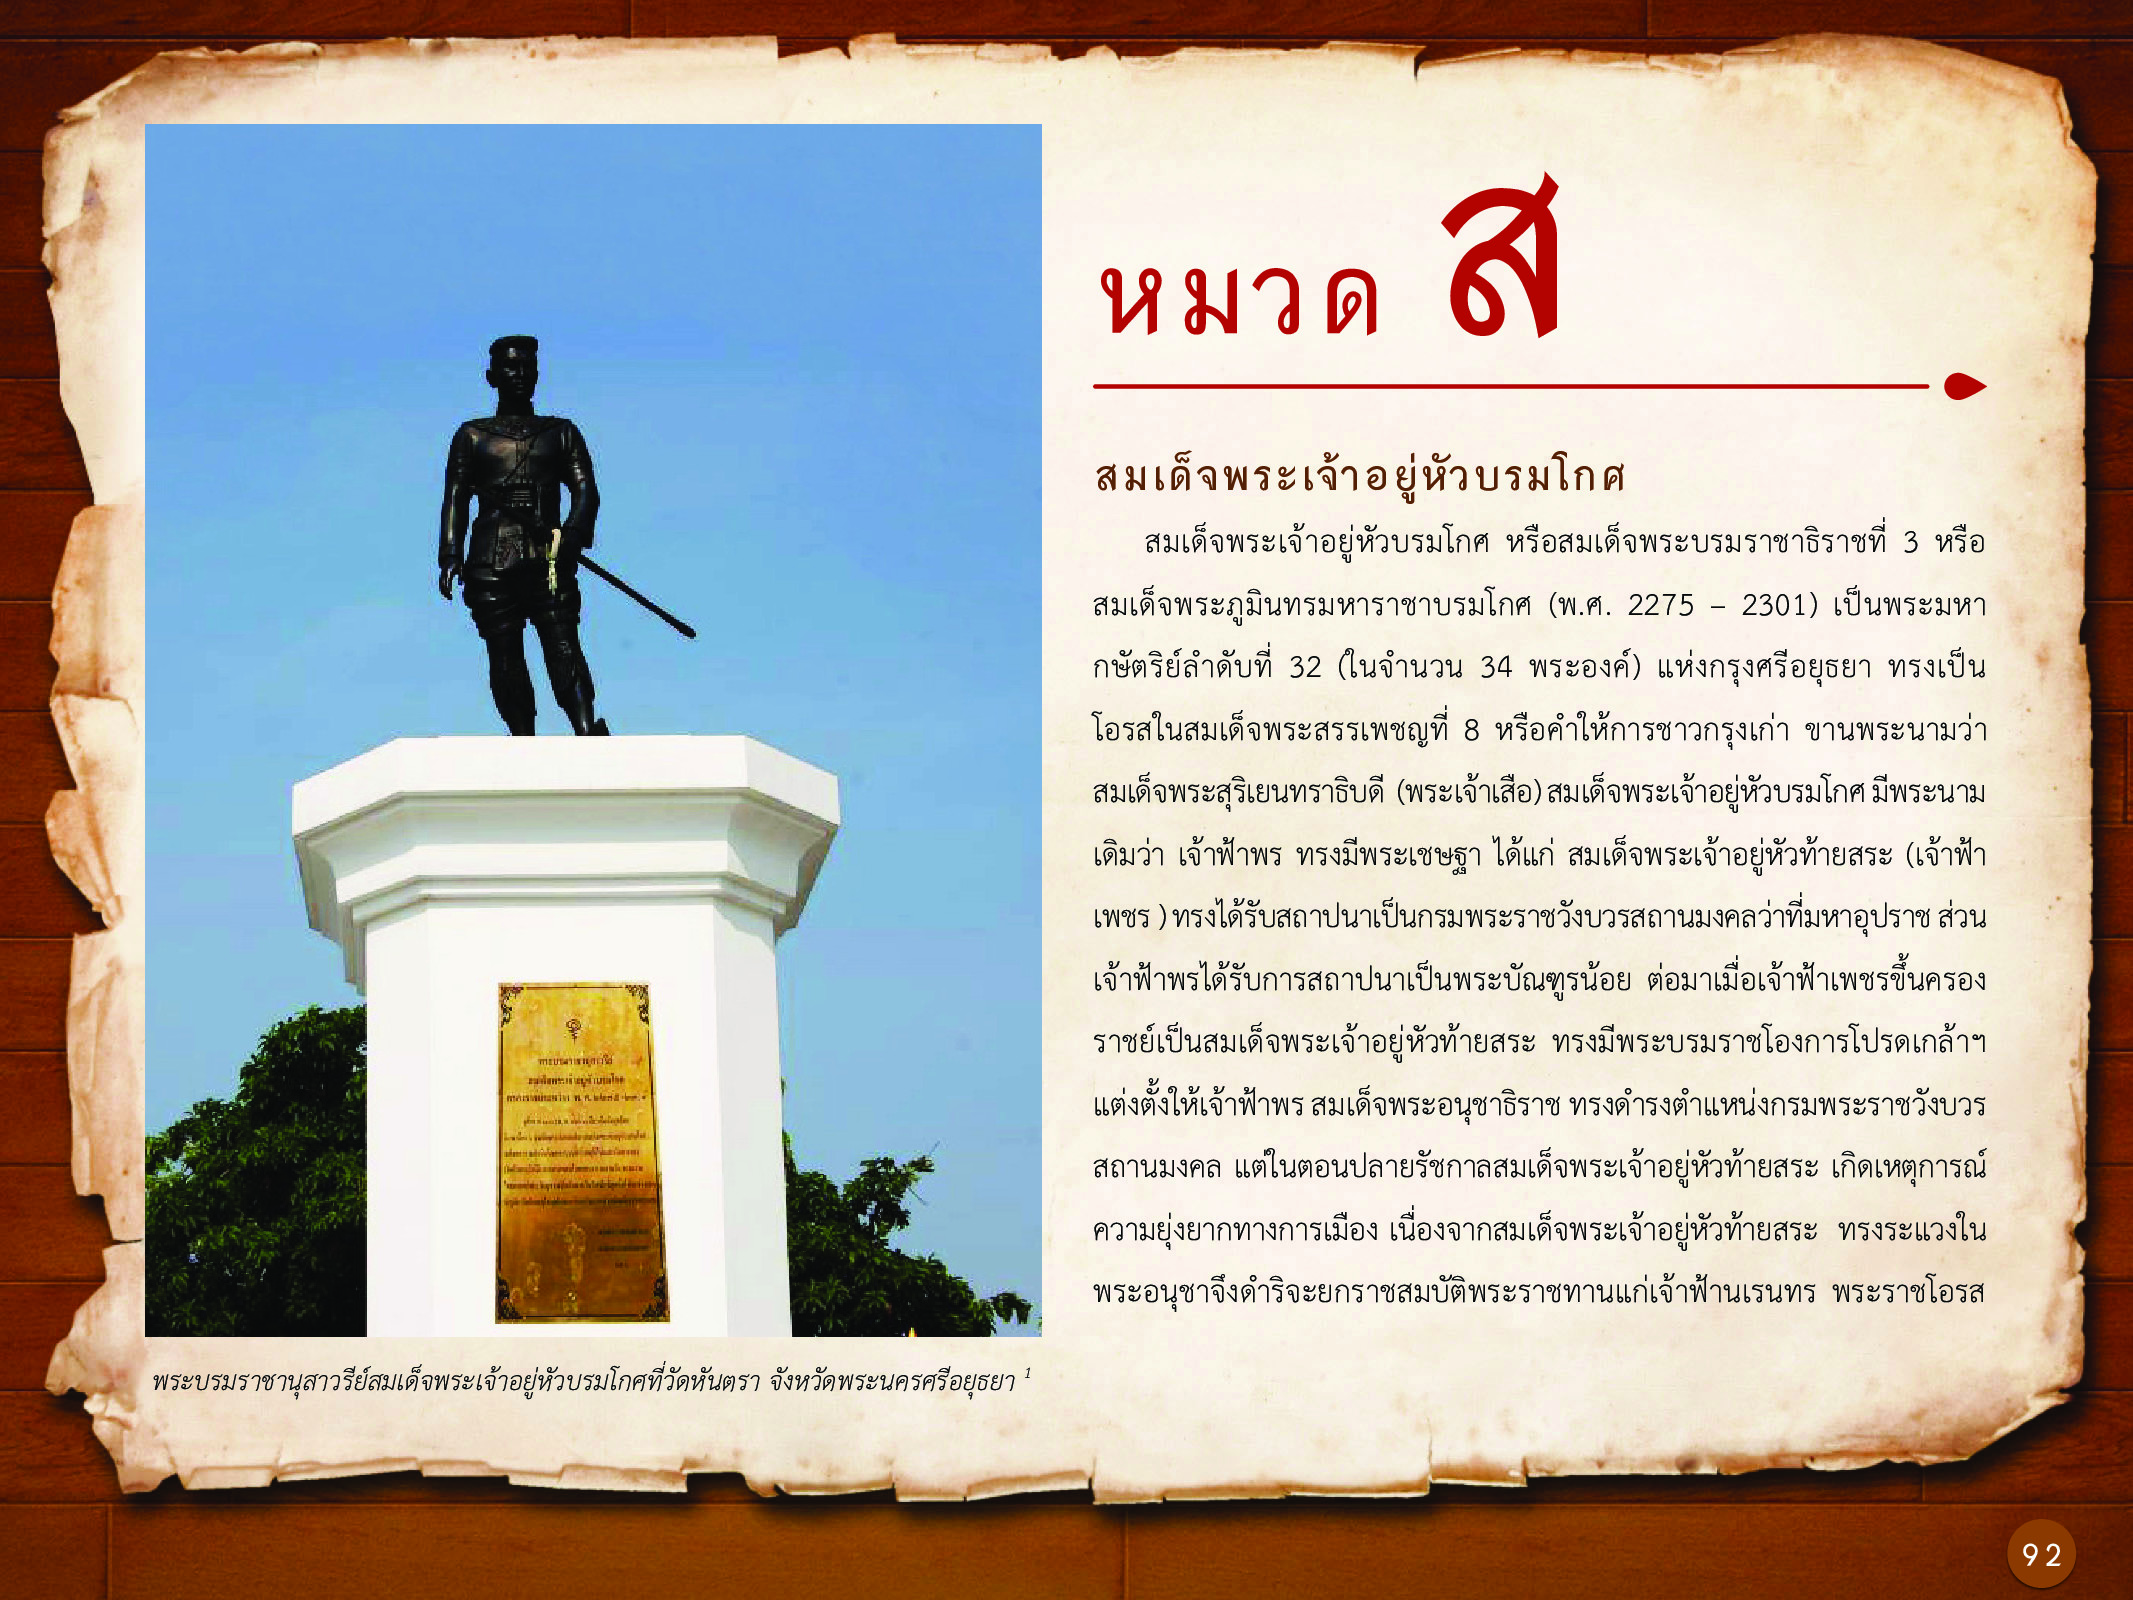 ประวัติศาสตร์กรุงธนบุรี ./images/history_dhonburi/92.jpg